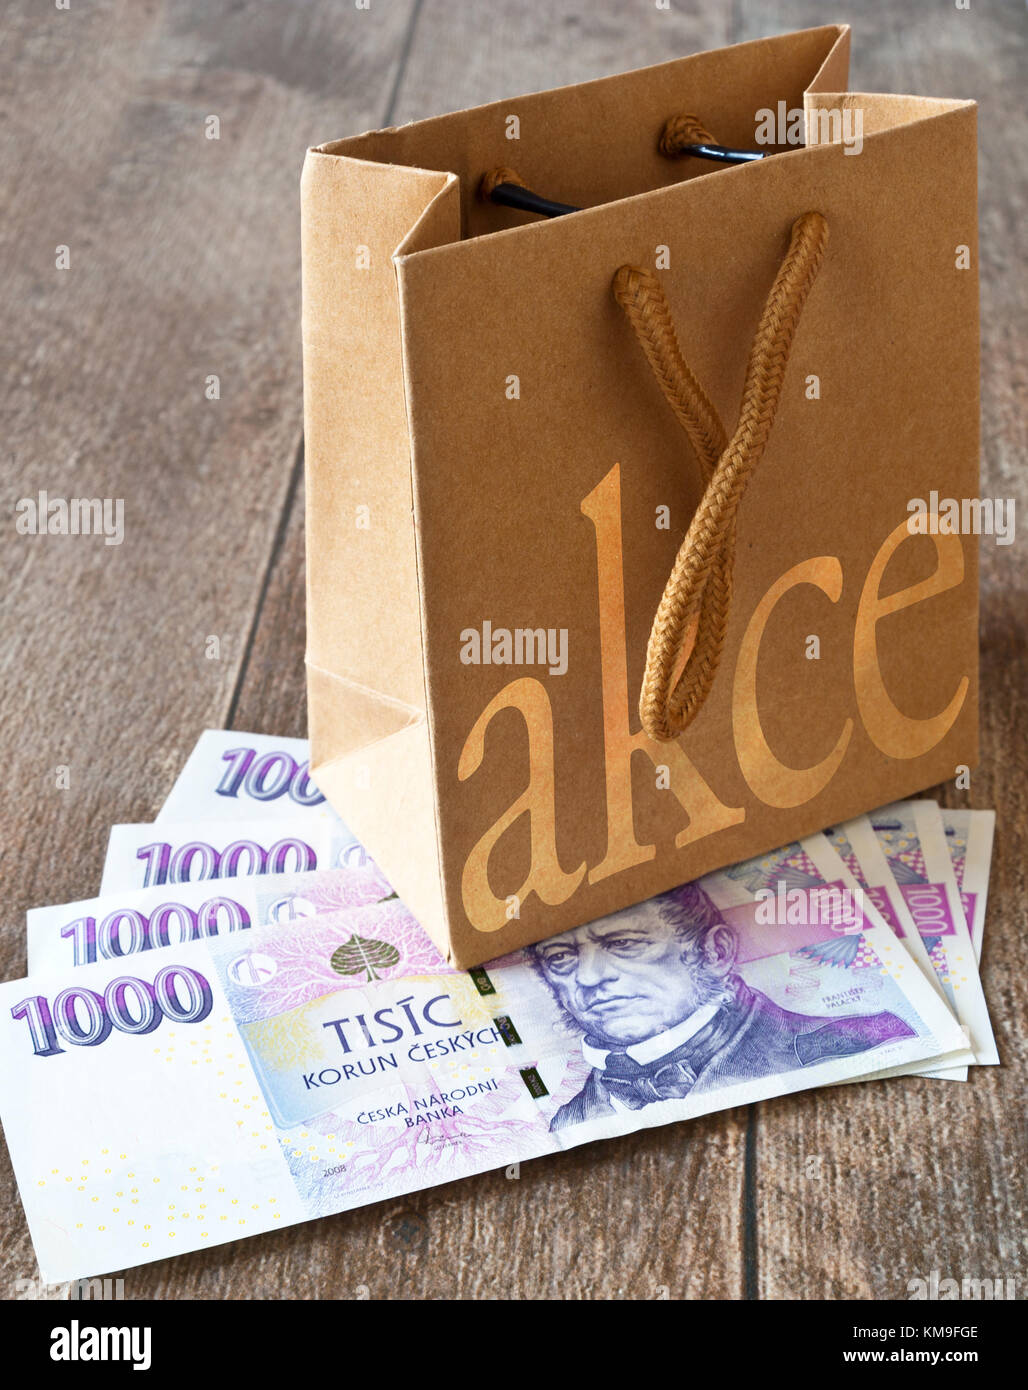 Czech economy and finance - paper shopping bag and czech banknotes - české  peníze a nákupní taška - slevy a akce Stock Photo - Alamy